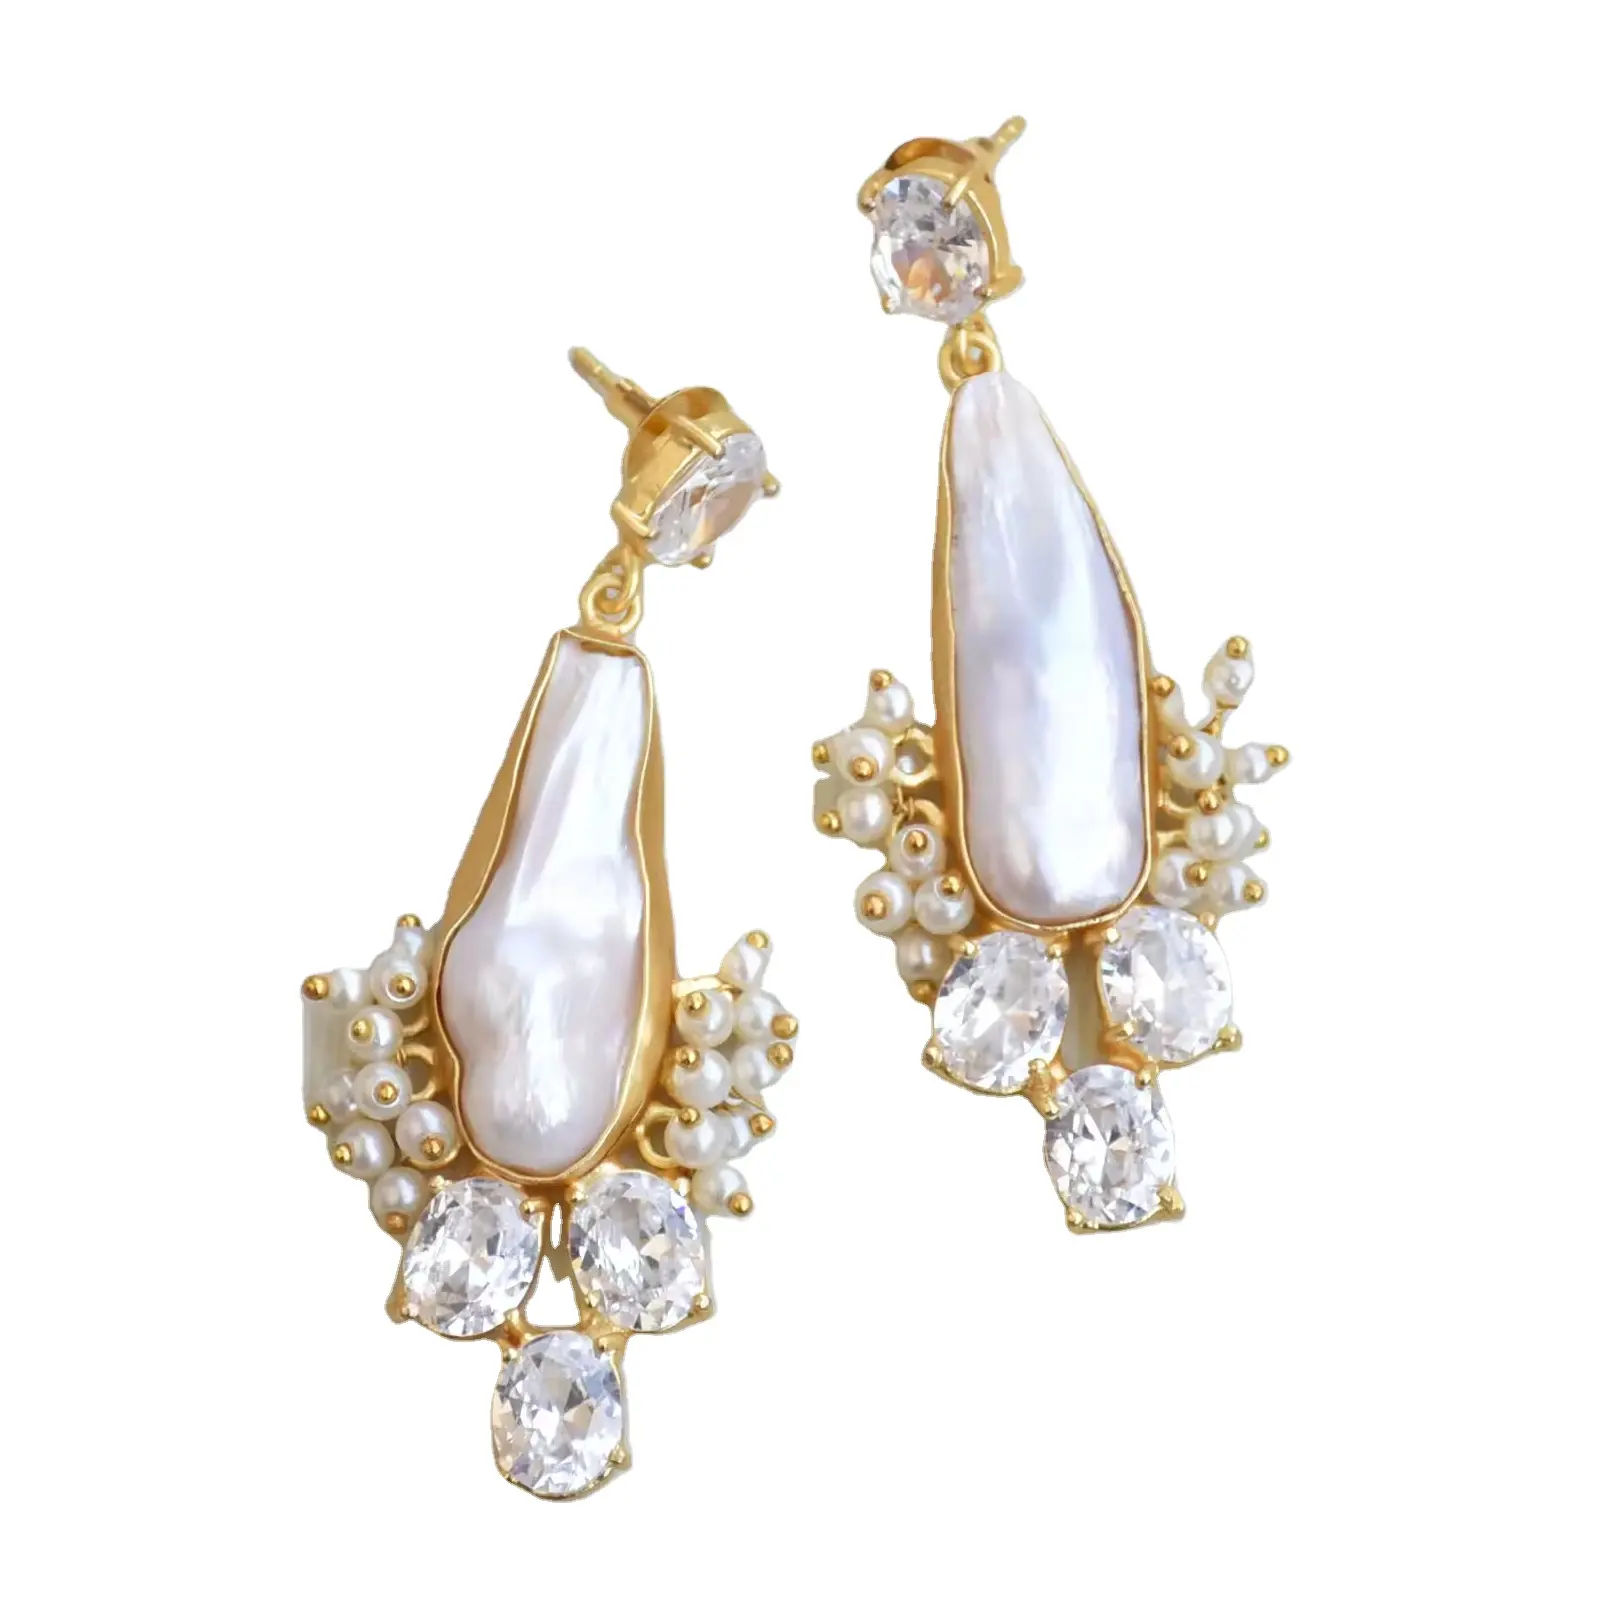 Longue goutte perle avec Zircon bijoux baroque perle déclaration bijoux fournisseurs de gros vêtements ethniques boucles d'oreilles légères balancent